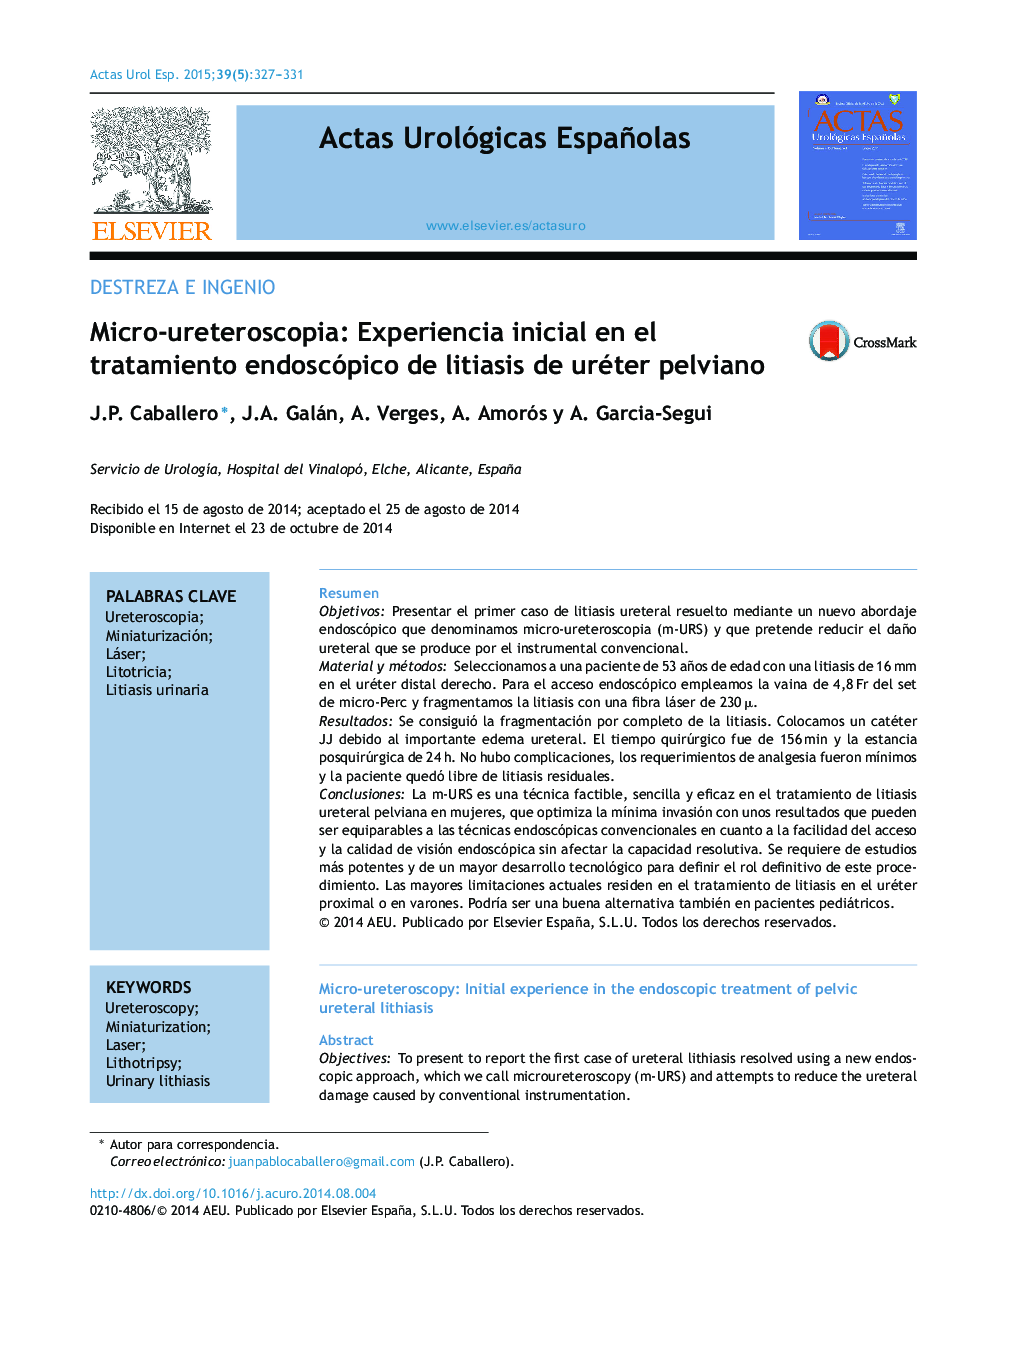 Micro-ureteroscopia: Experiencia inicial en el tratamiento endoscópico de litiasis de uréter pelviano